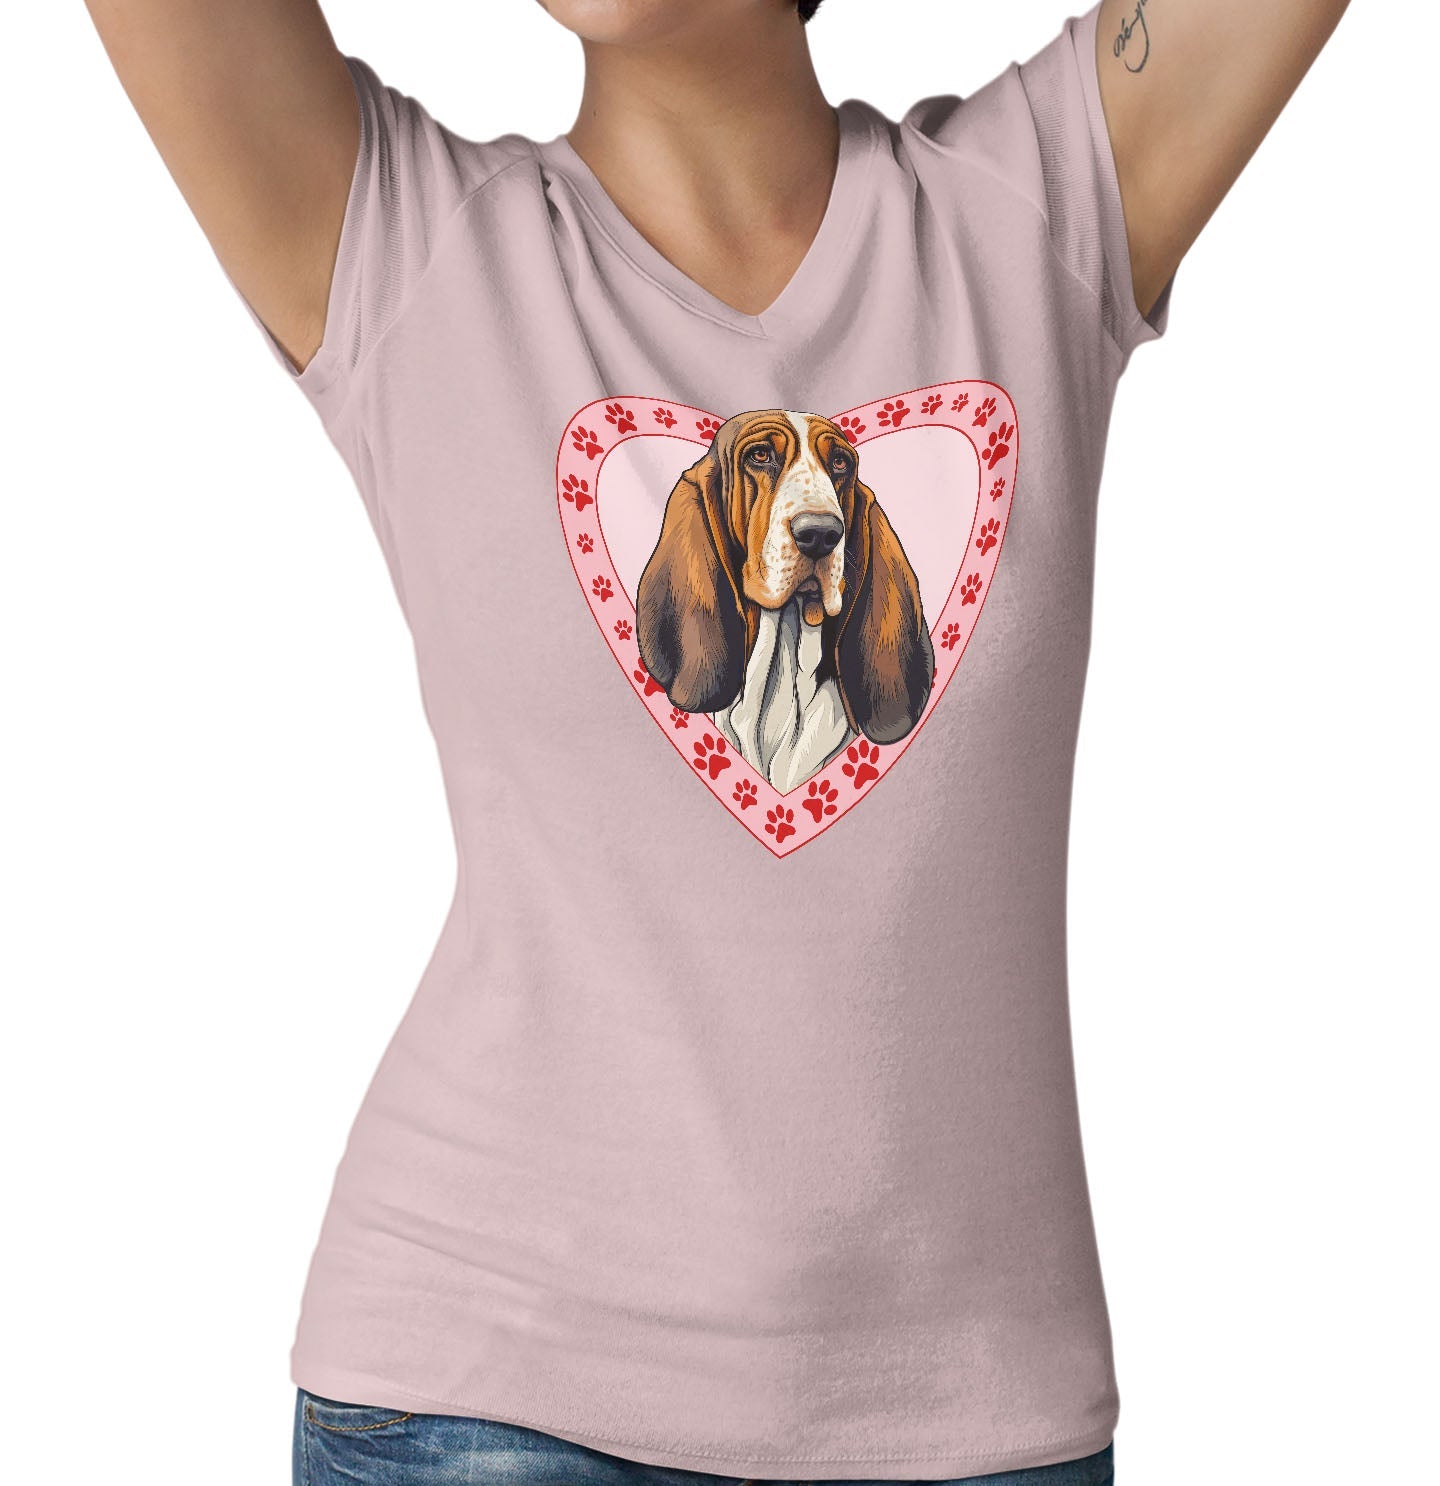 Basset Hound (Red & White) Illustration In Heart - Women's V-Neck T-Shirt